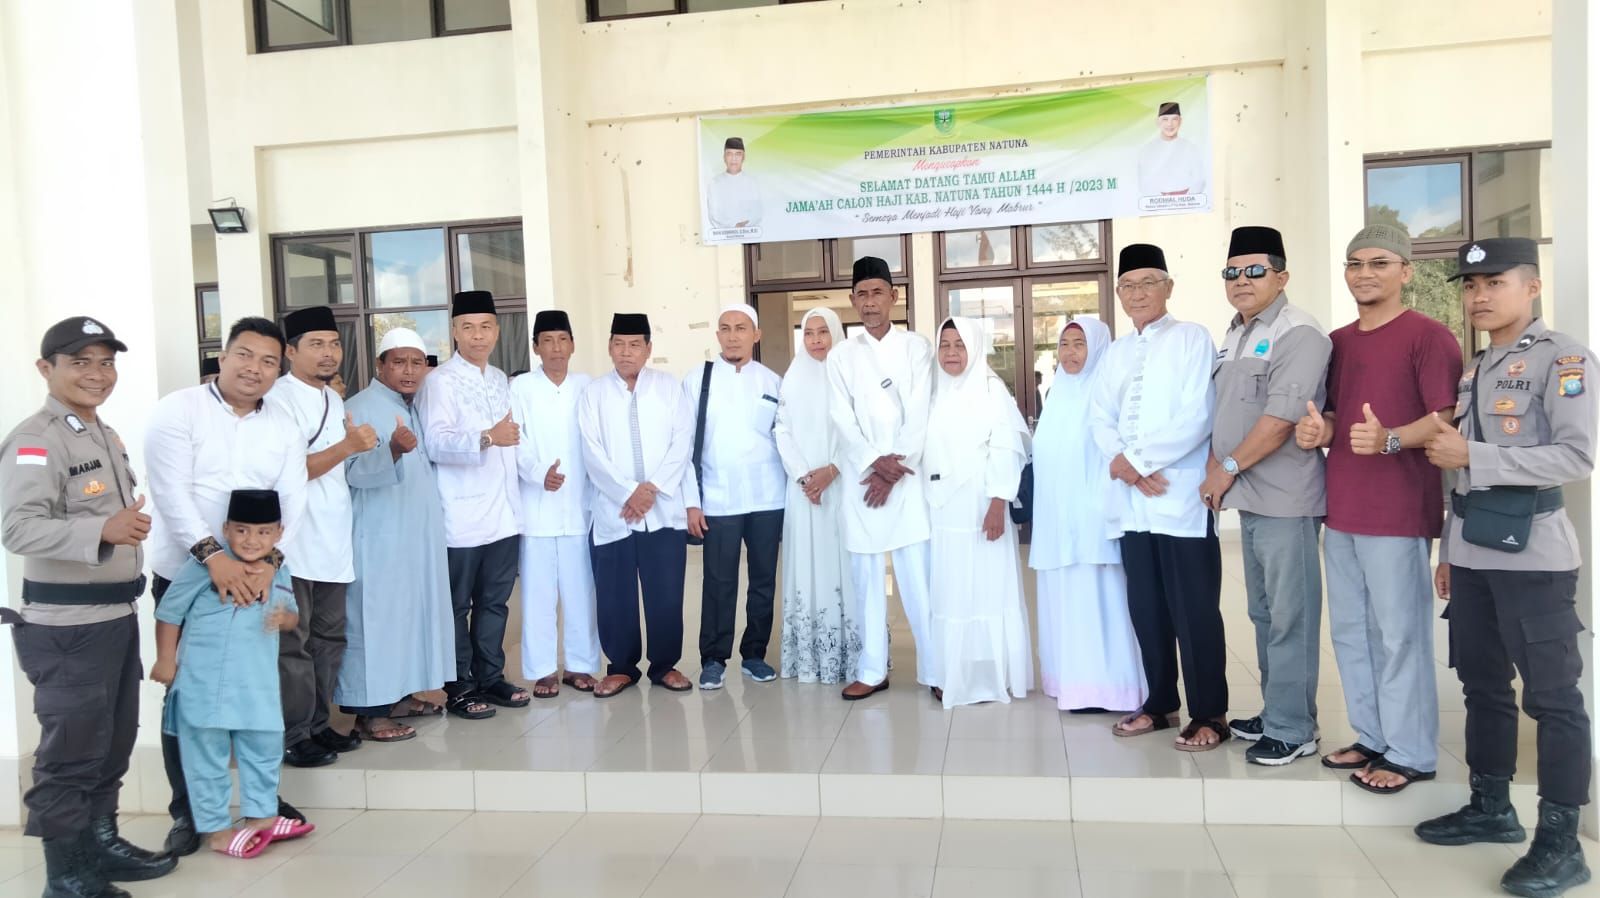 Calon Jemaah Haji asal Kecamatan Bunguran Barat sat tiba di Asrama Haji Natuna -f/istimewa 